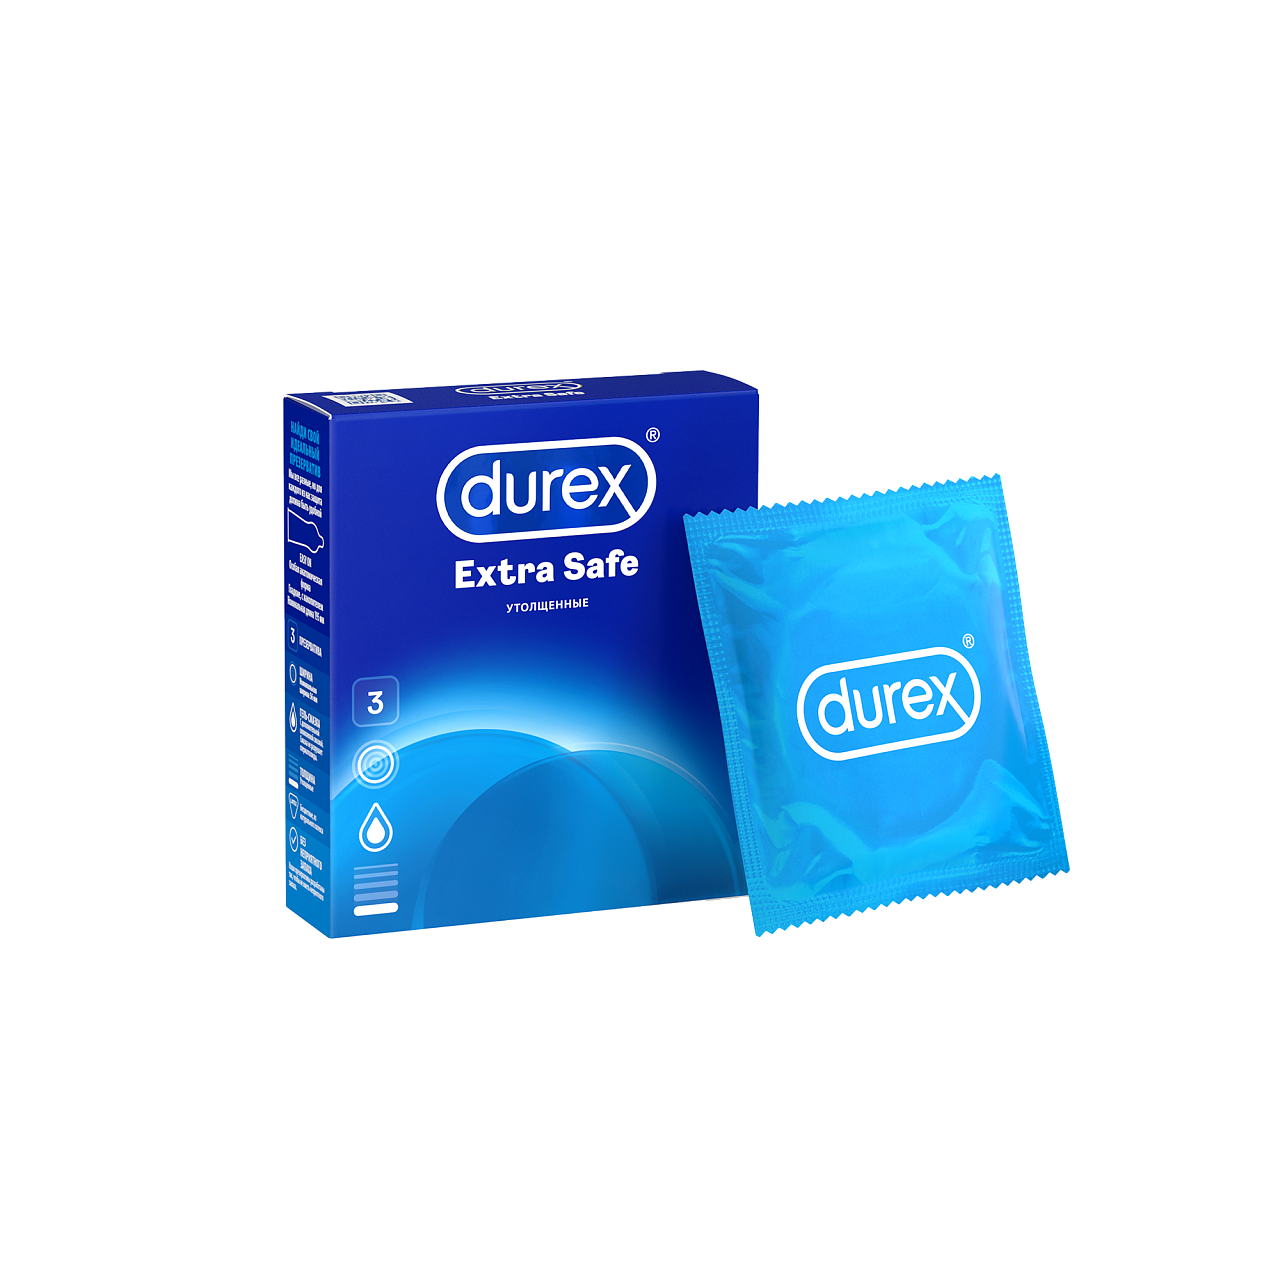 Durex safe. Дюрекс презервативы Экстра сейф №3. Durex презервативы Extra safe утолщенные, 3 шт. Дюрекс презервативы Extra safe толщина. Презервативы дюрекс Экстра софт ?.